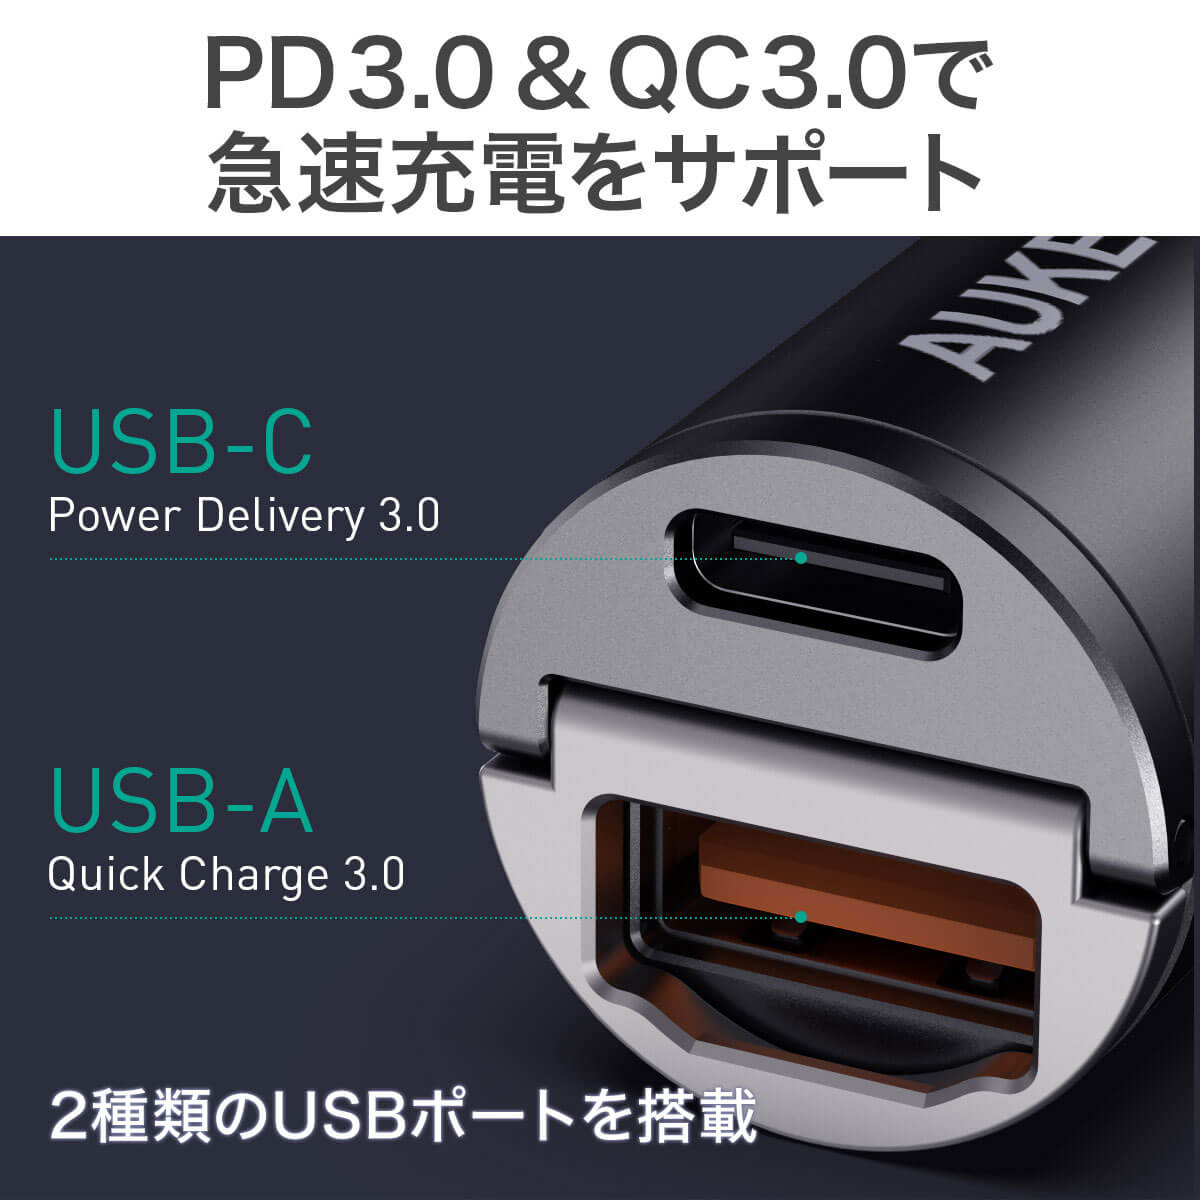 シガーソケット USB 充電器 AUKEY オーキー Nano Series 30W ブラック CC-A3-BK スマホ iPhone Android  カーチャージャー 充電 USB-C USB-A コンパクト 軽量 スリム 出っ張らない PD3.0 QC3.0 2ポート 2年保証 | ...